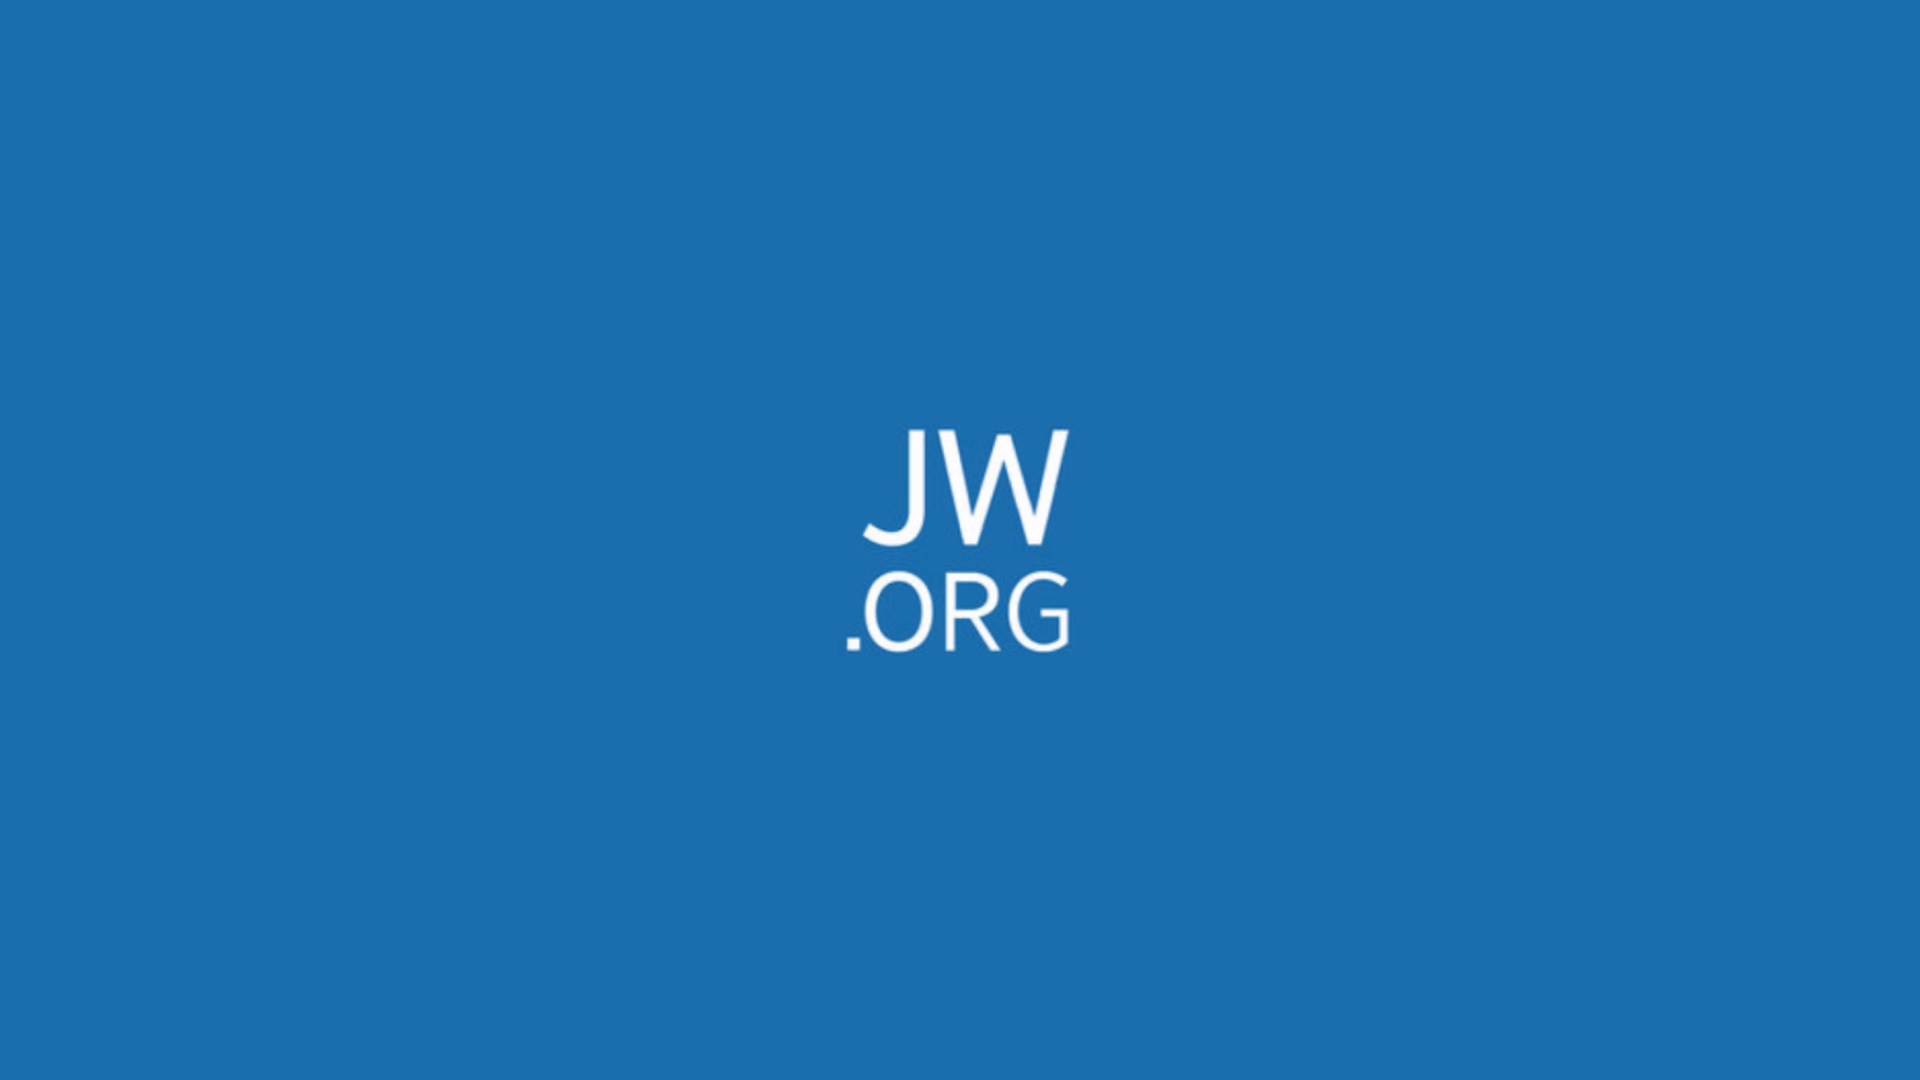 1920x1080 logo jw.org - Buscar con Google